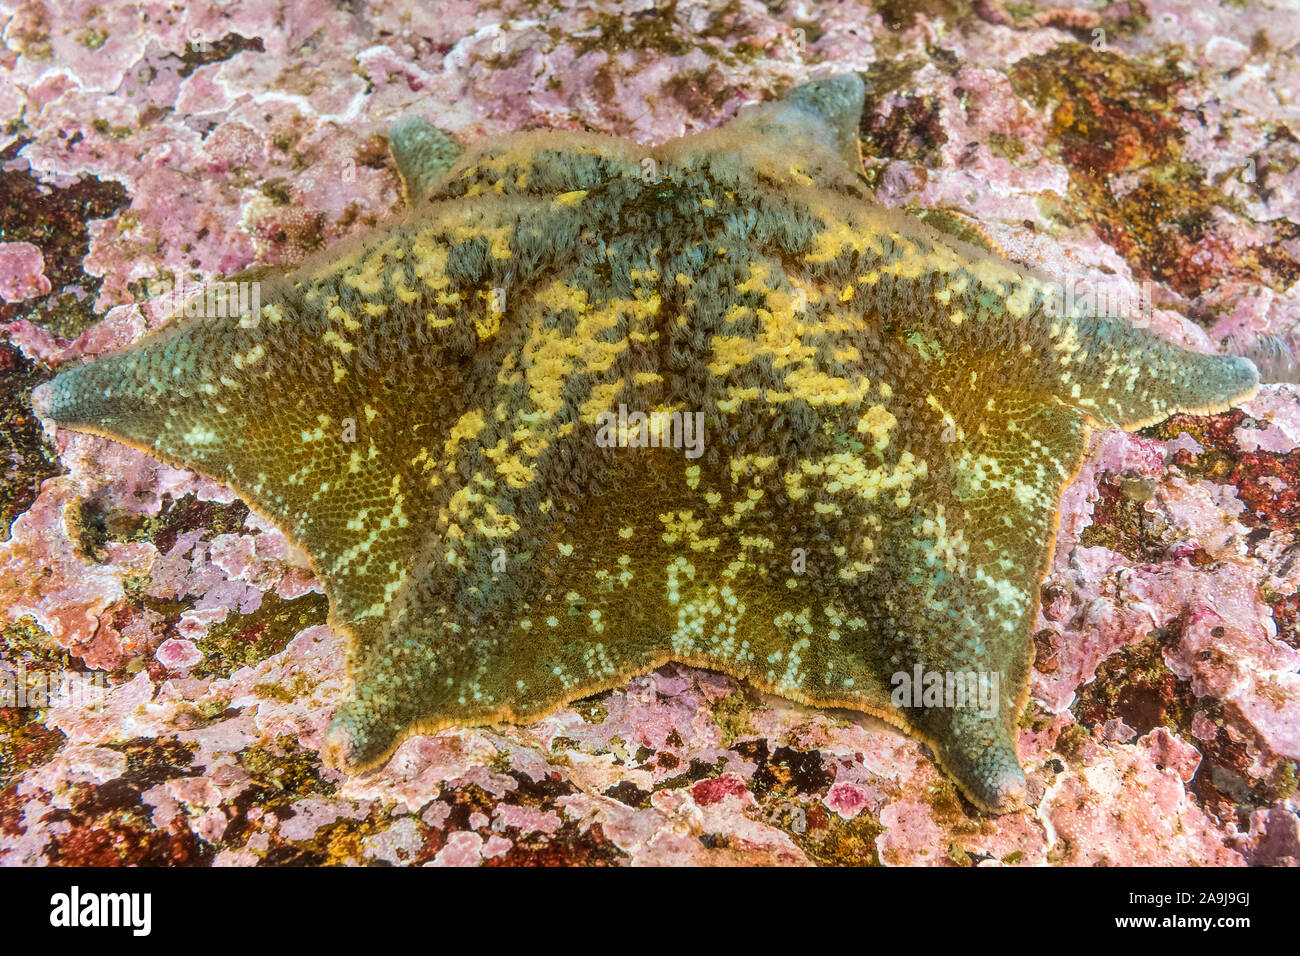 Asterina miniata bat star, et de corallines encroûtantes, Barkley Sound, l'île de Vancouver, Colombie-Britannique, Canada, Océan Pacifique Banque D'Images